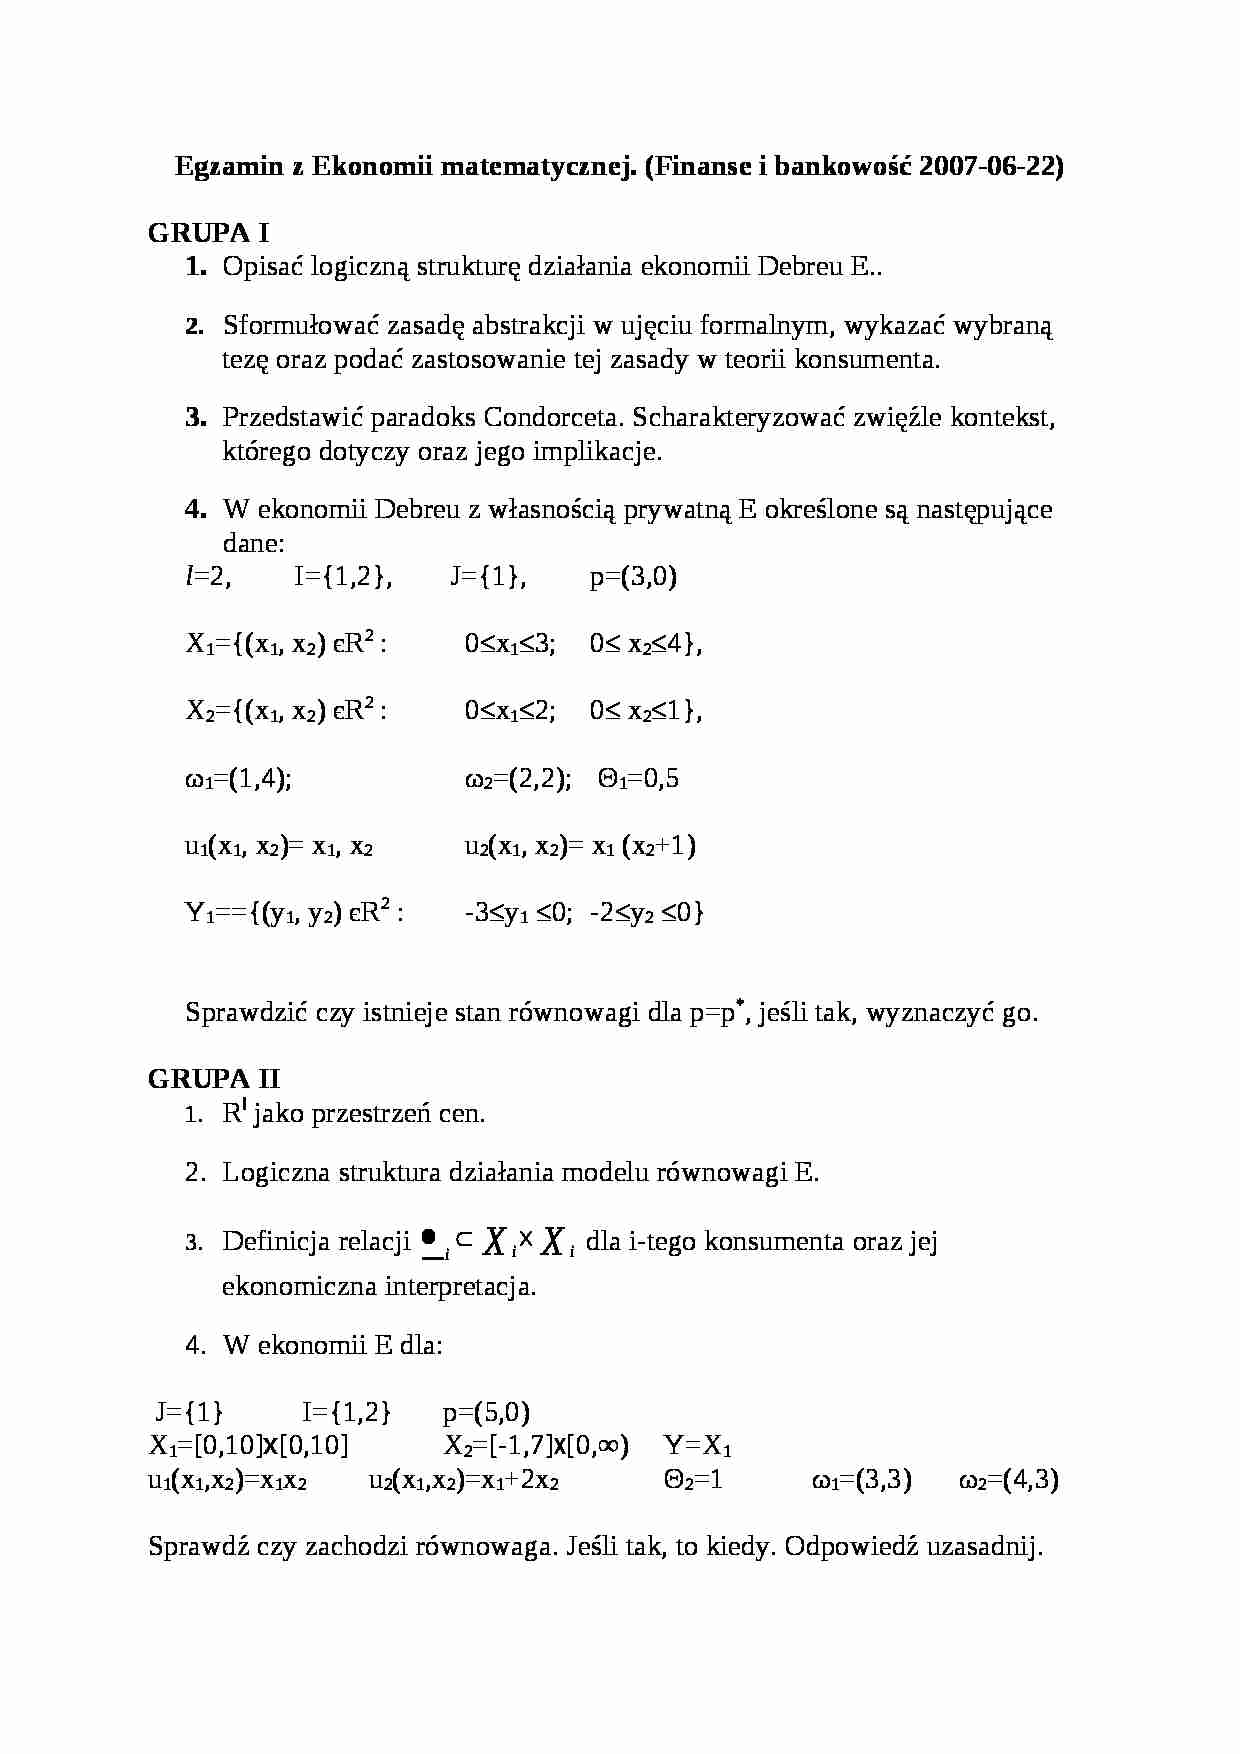 Egzamin z Ekonomii matematycznej - Finanse i bankowość - strona 1